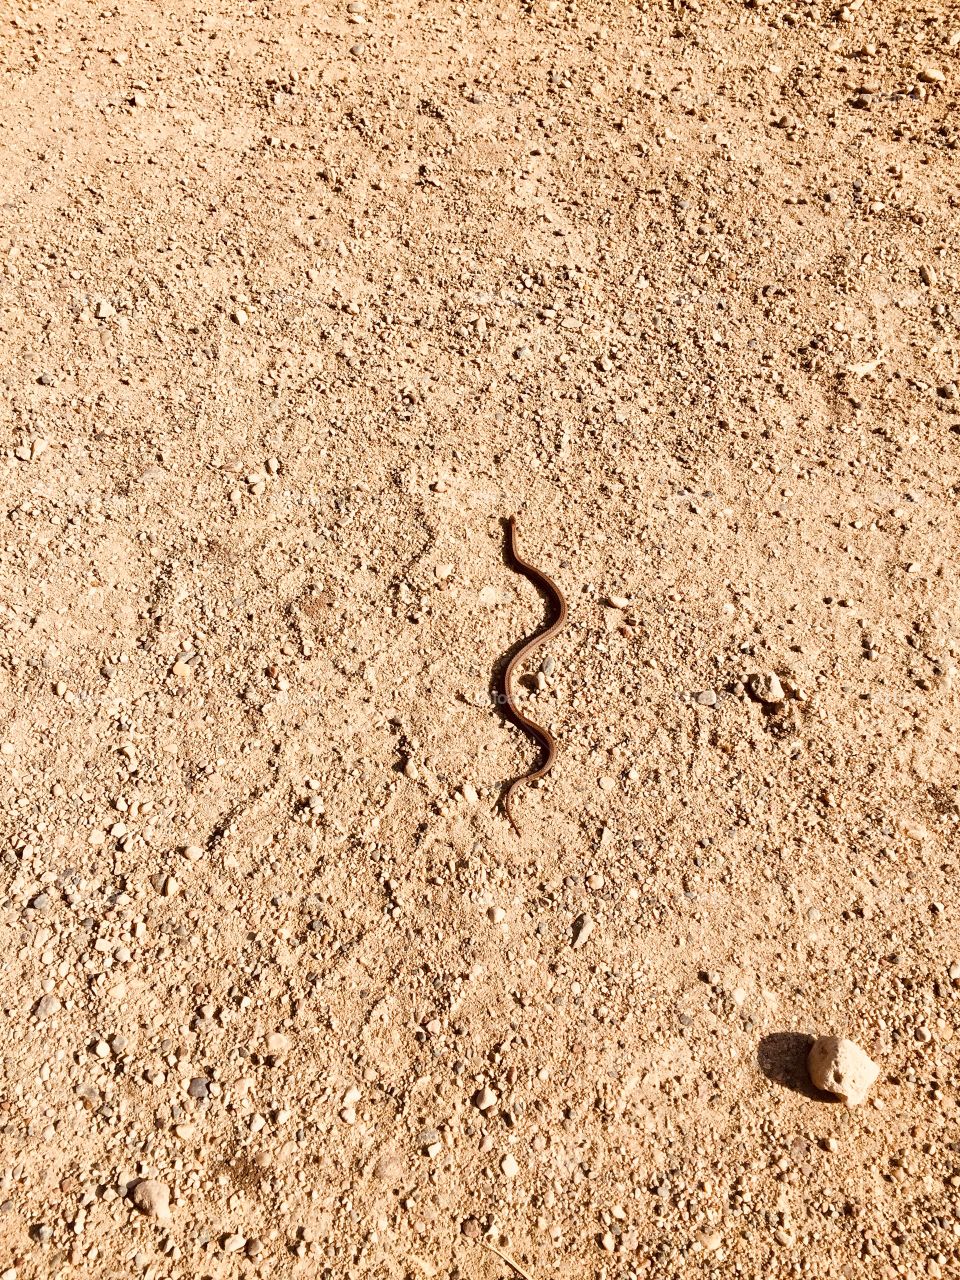 Little snake Brandon hills mb 